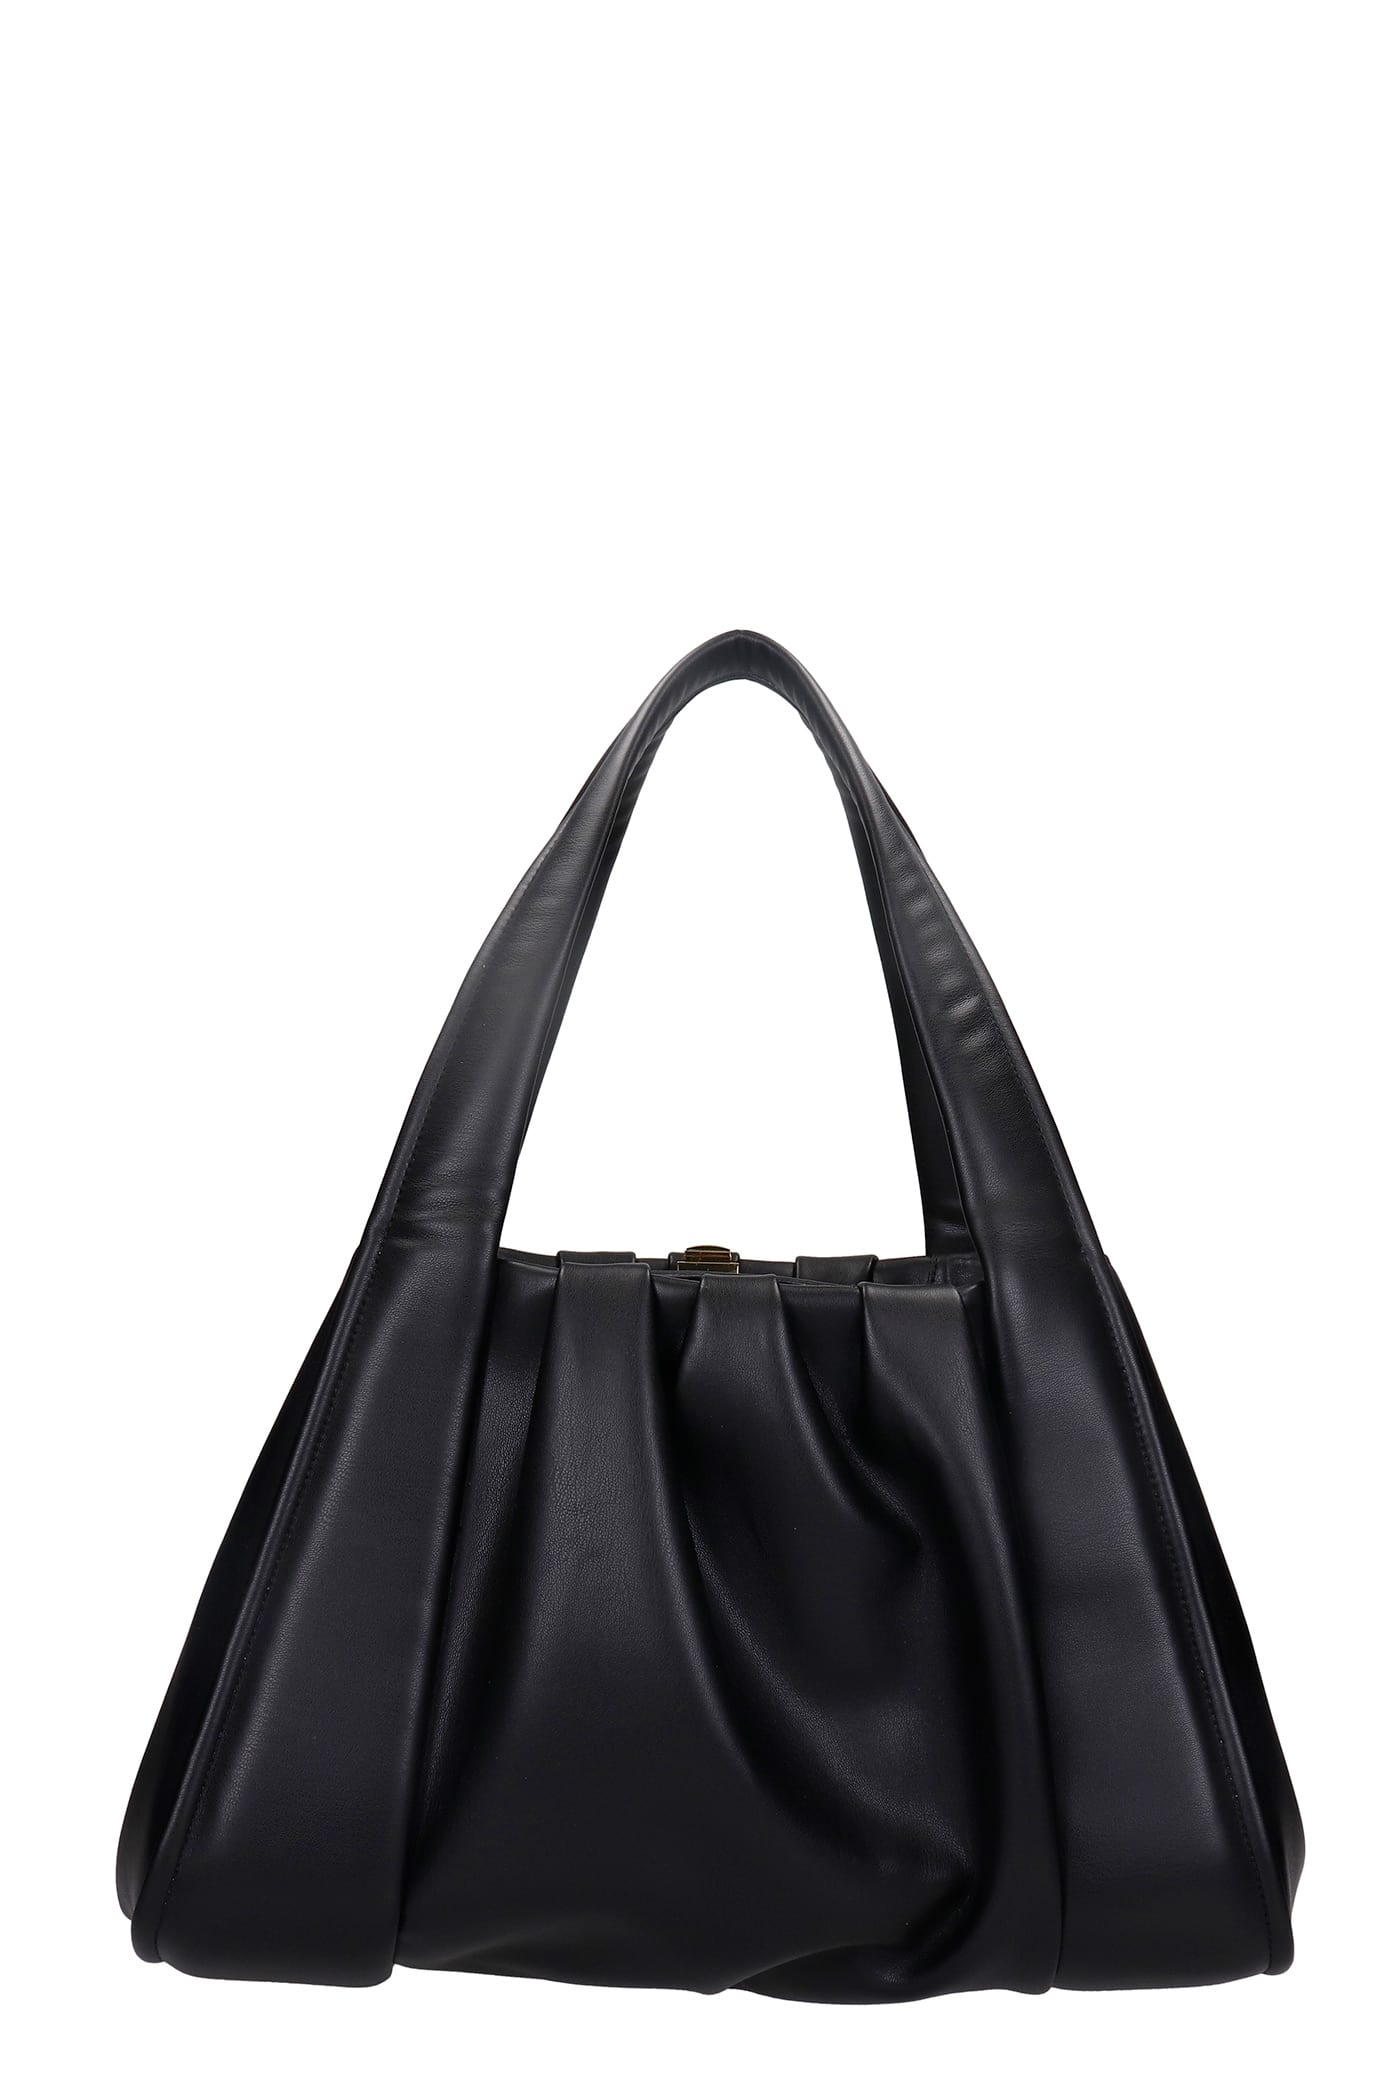 THEMOIRè Irida Basic Shoulder Bag In Black Leather